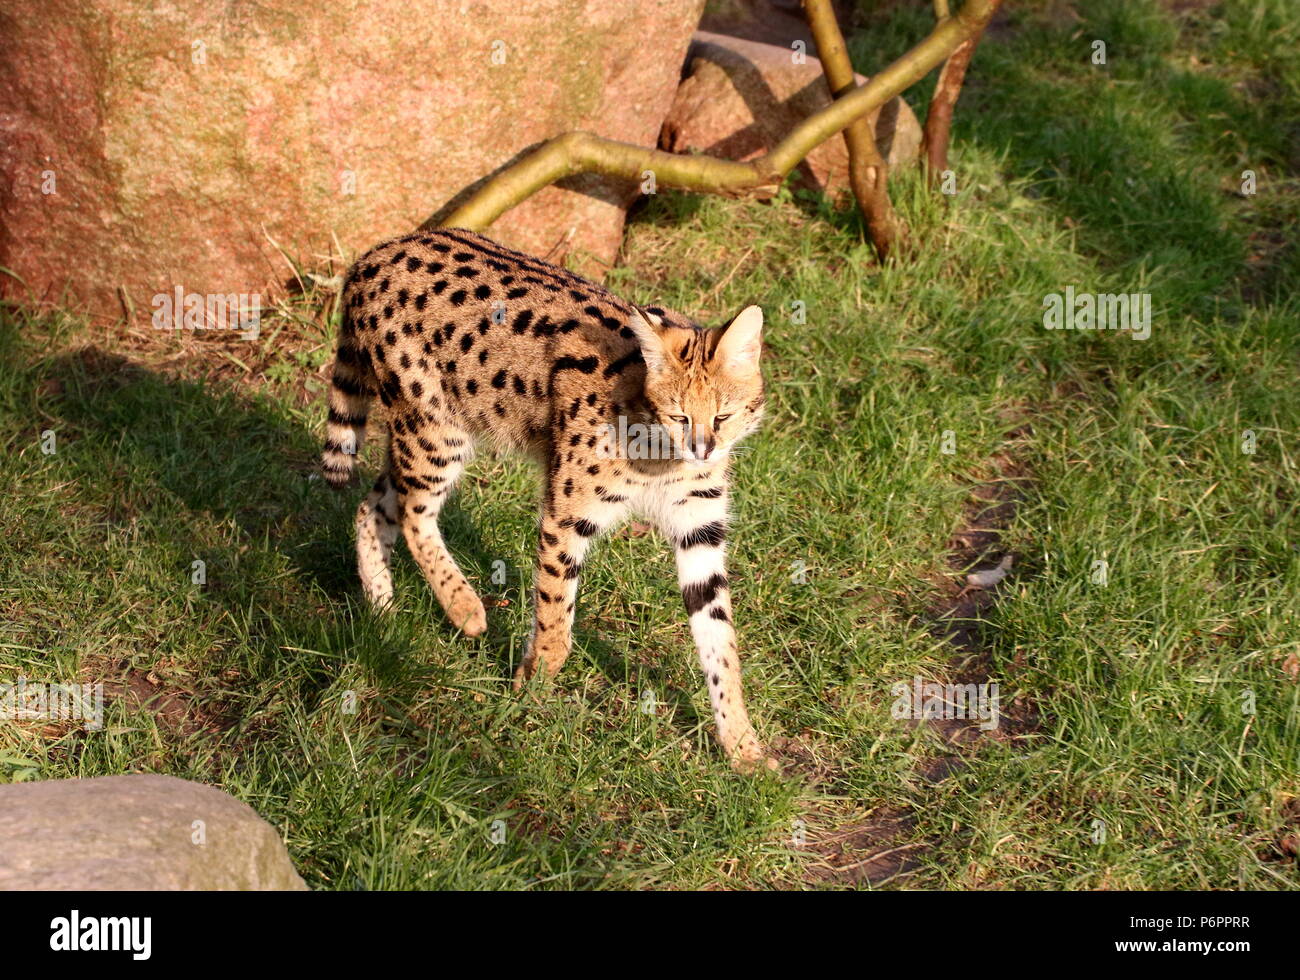 (Leptailurus serval africain femelle serval) la marche vers l'appareil photo Banque D'Images